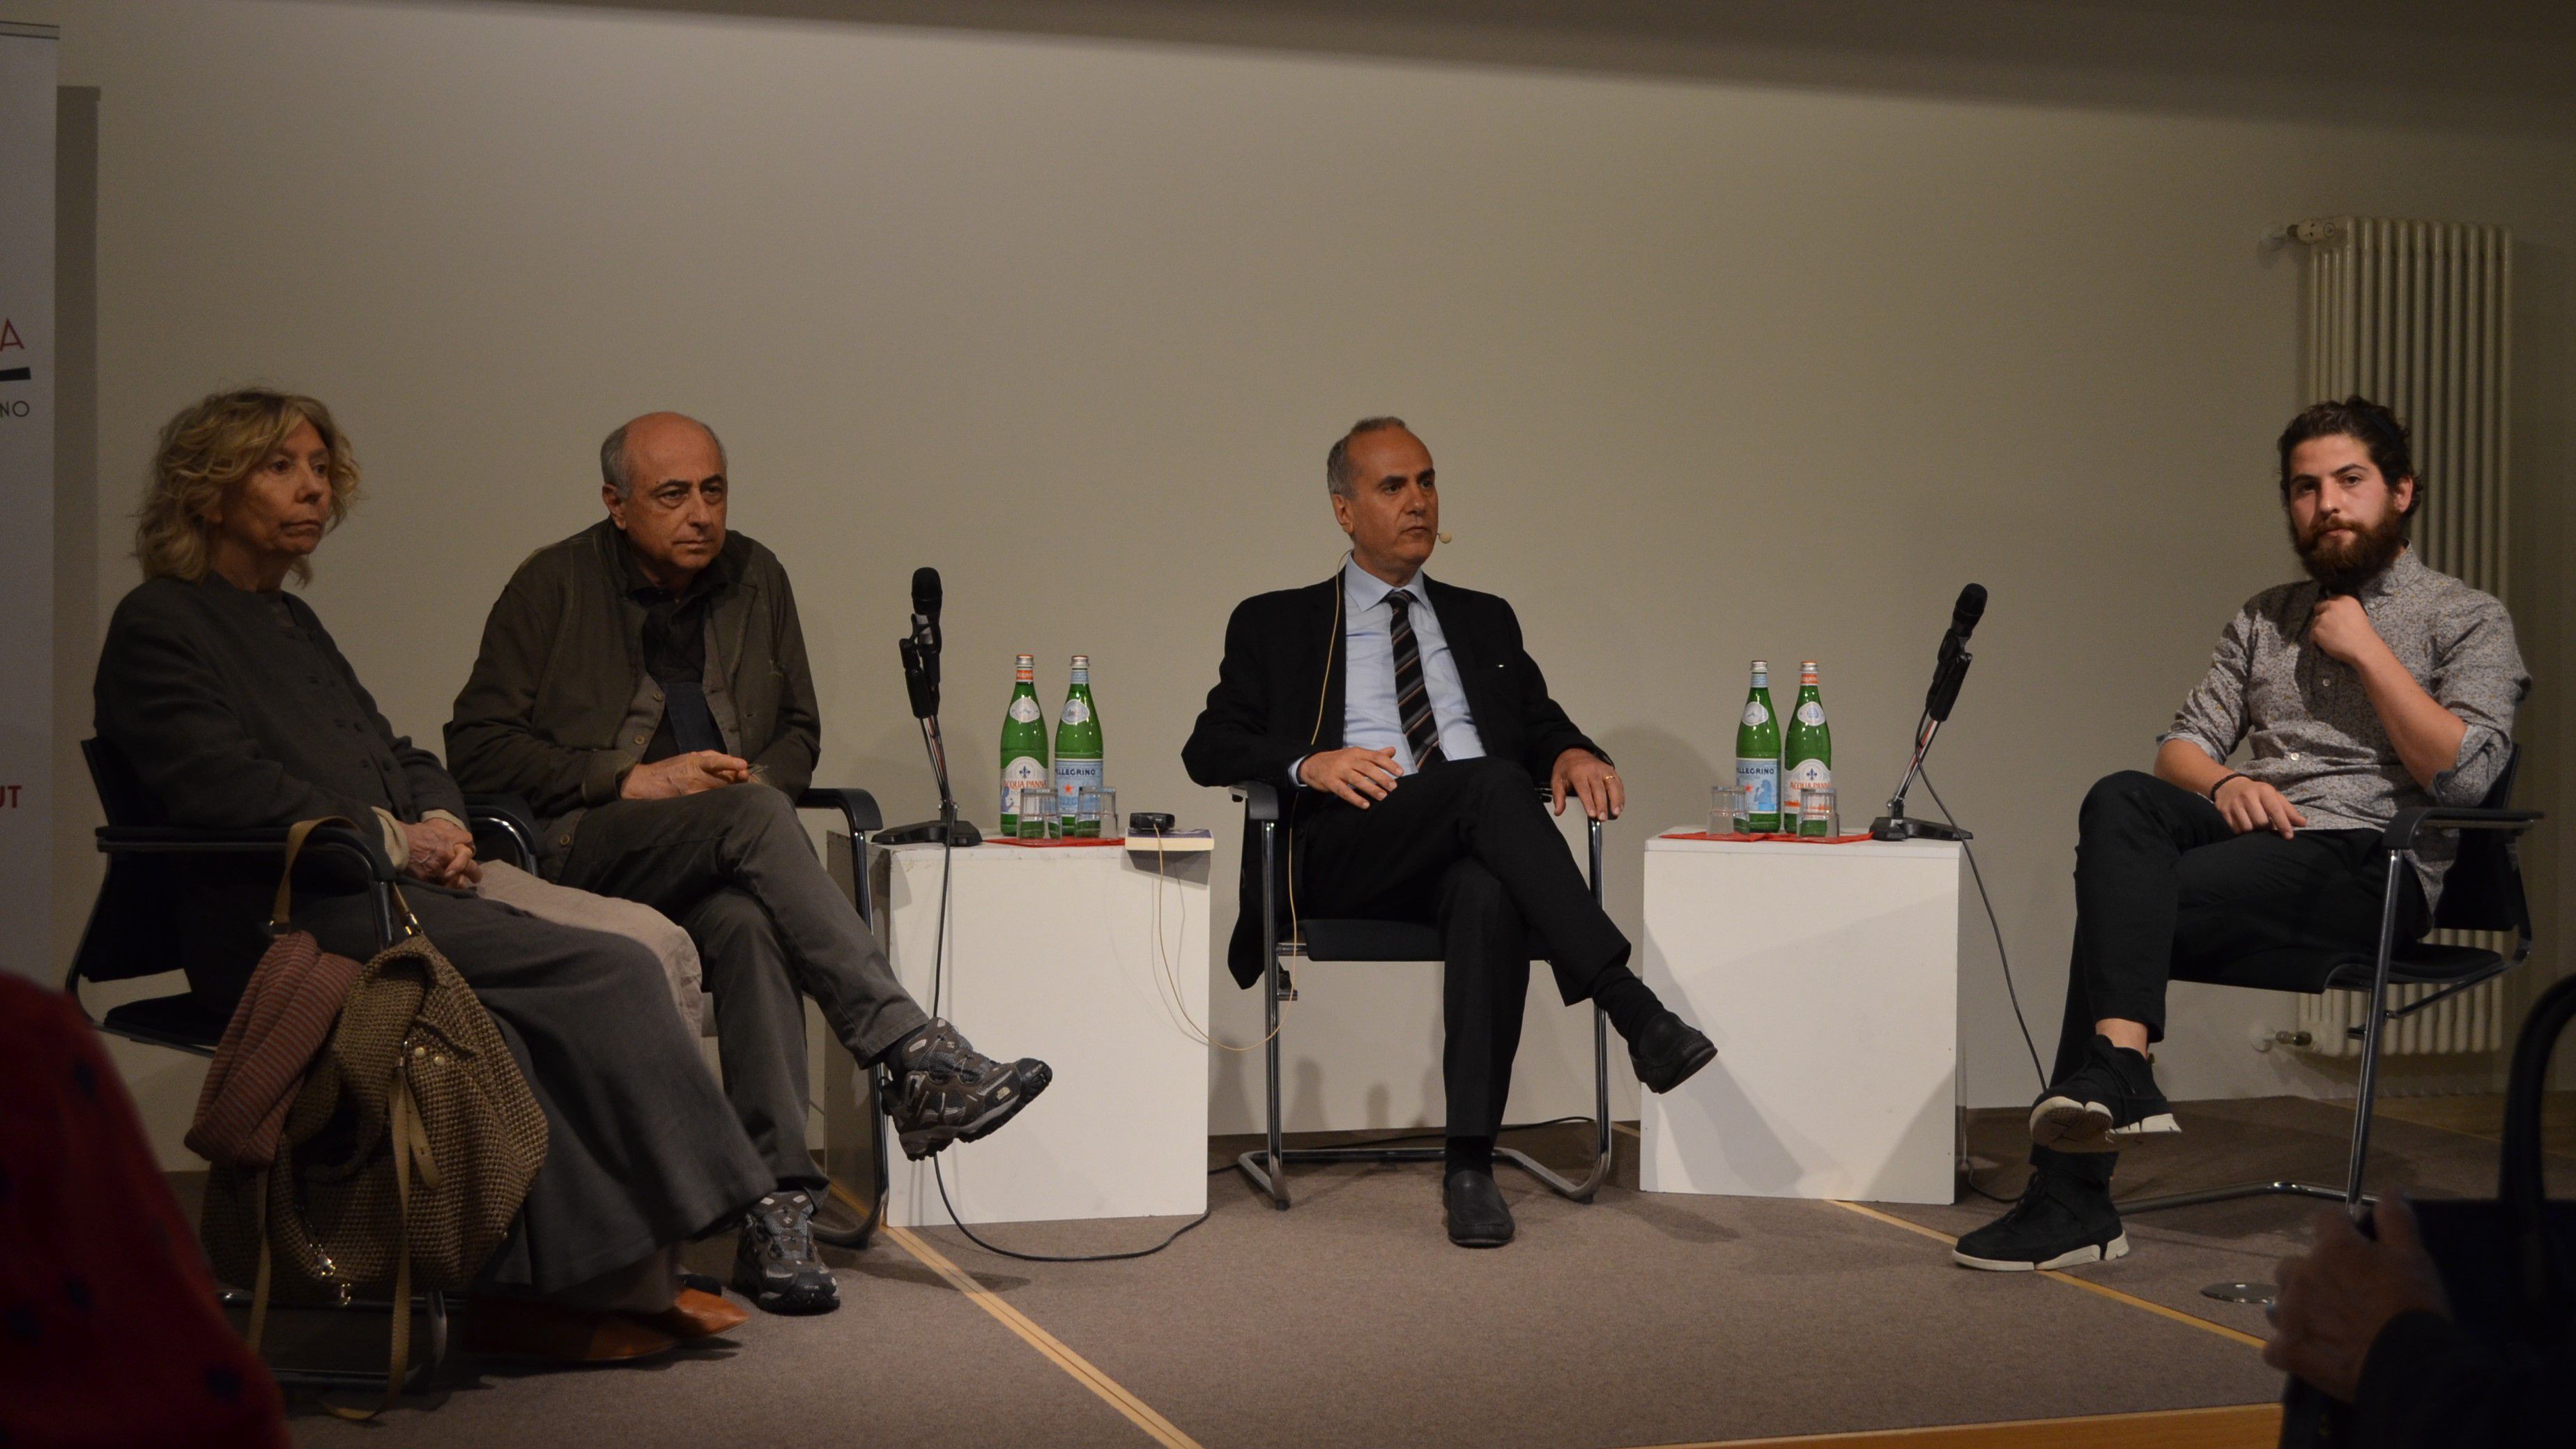 Die vier Teilnehmer:innen der Diskussion: v.l.n.r. Elda Ferri, Roberto Faenza, Luigi Reitani, Ottavio Sellitti